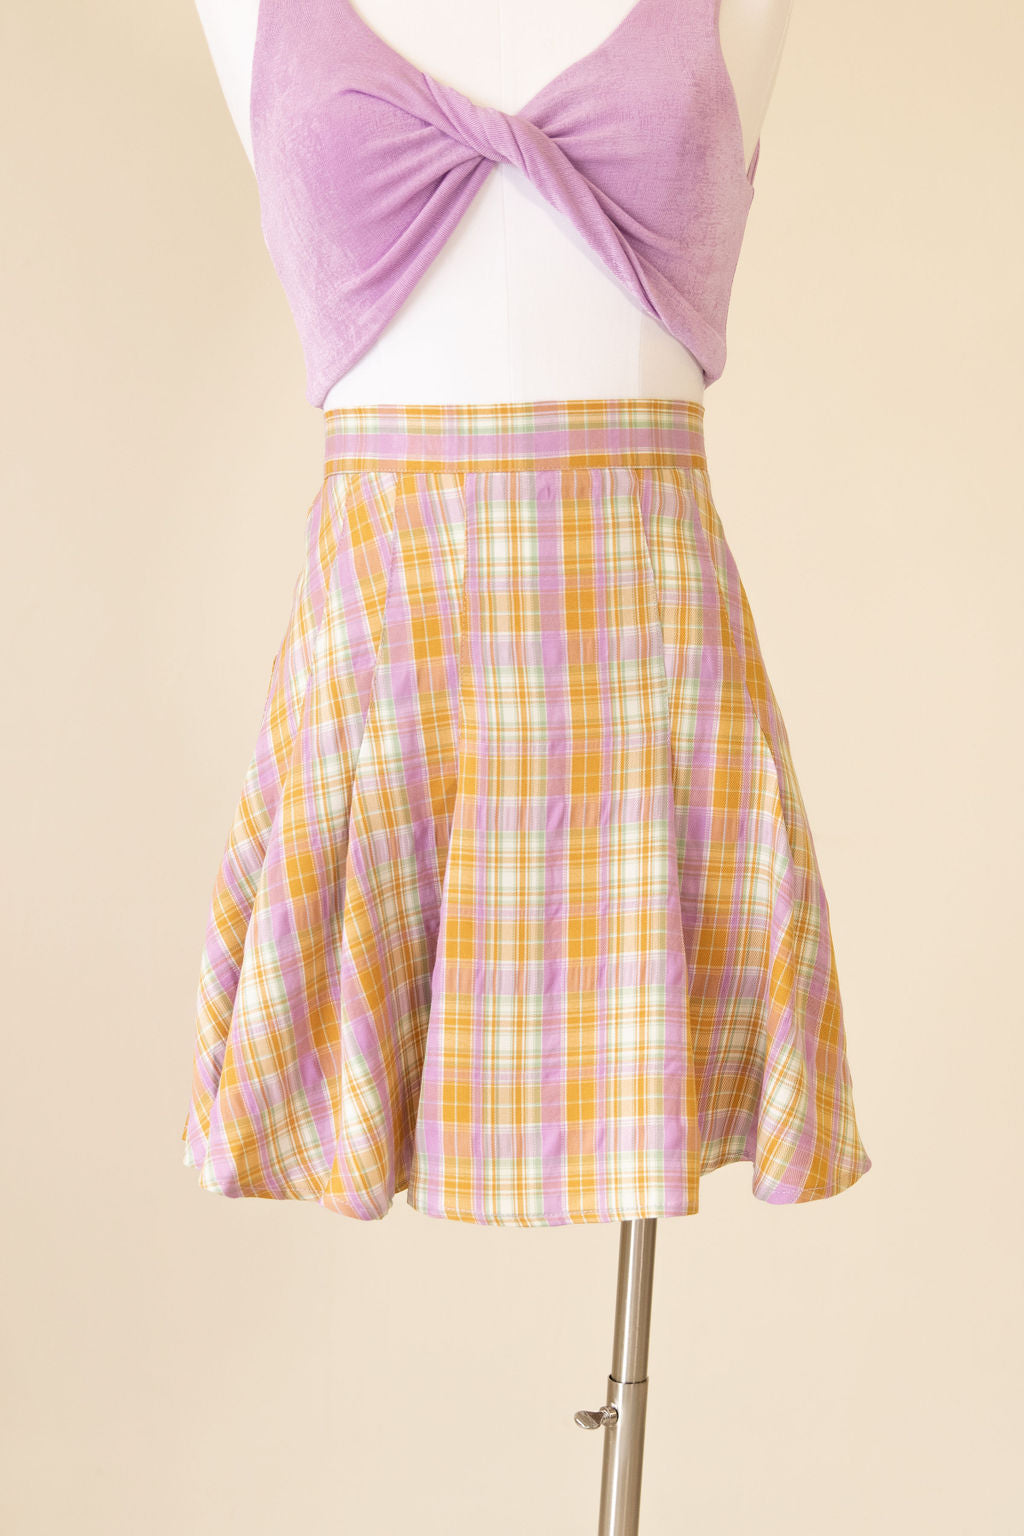 Tempt Me Plaid Mini Skirt